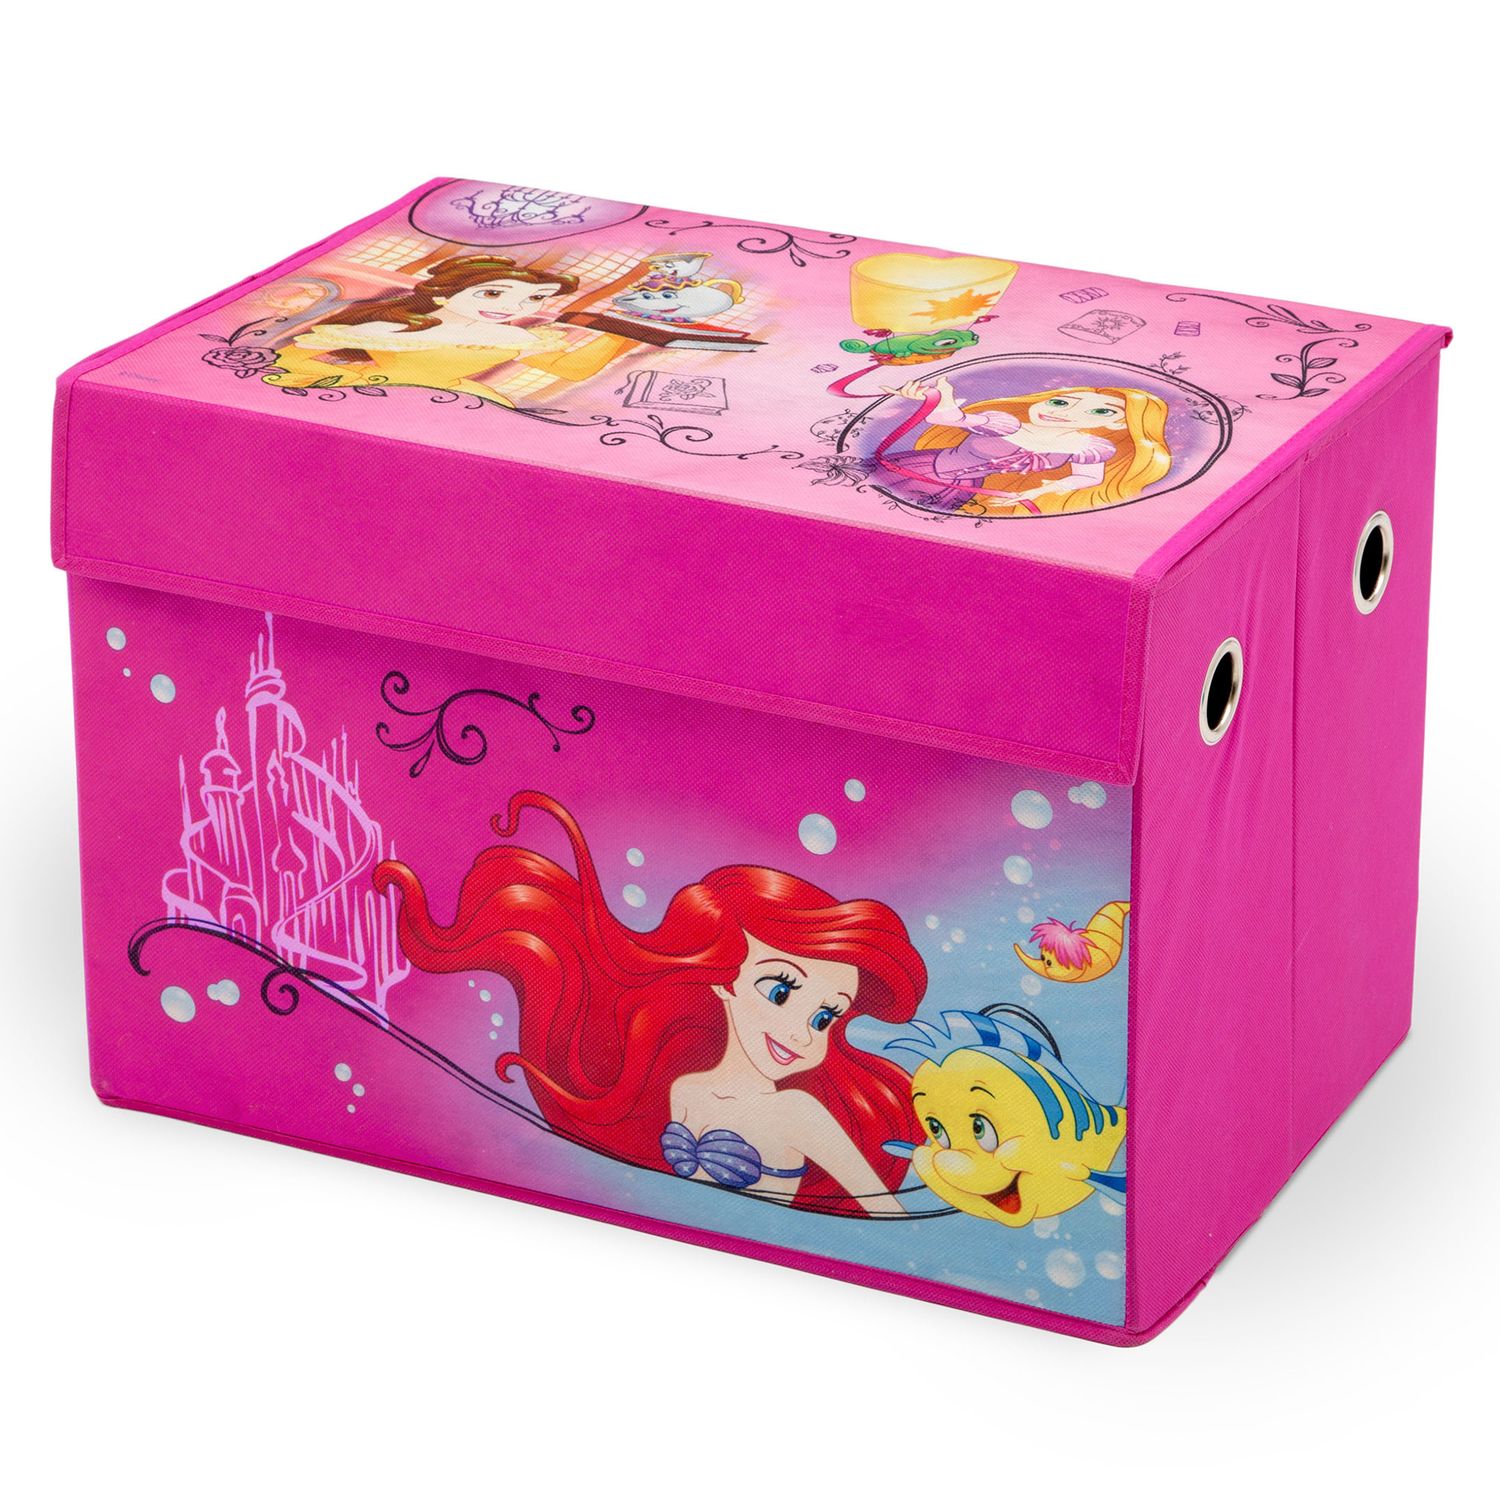 delta childrens toy box